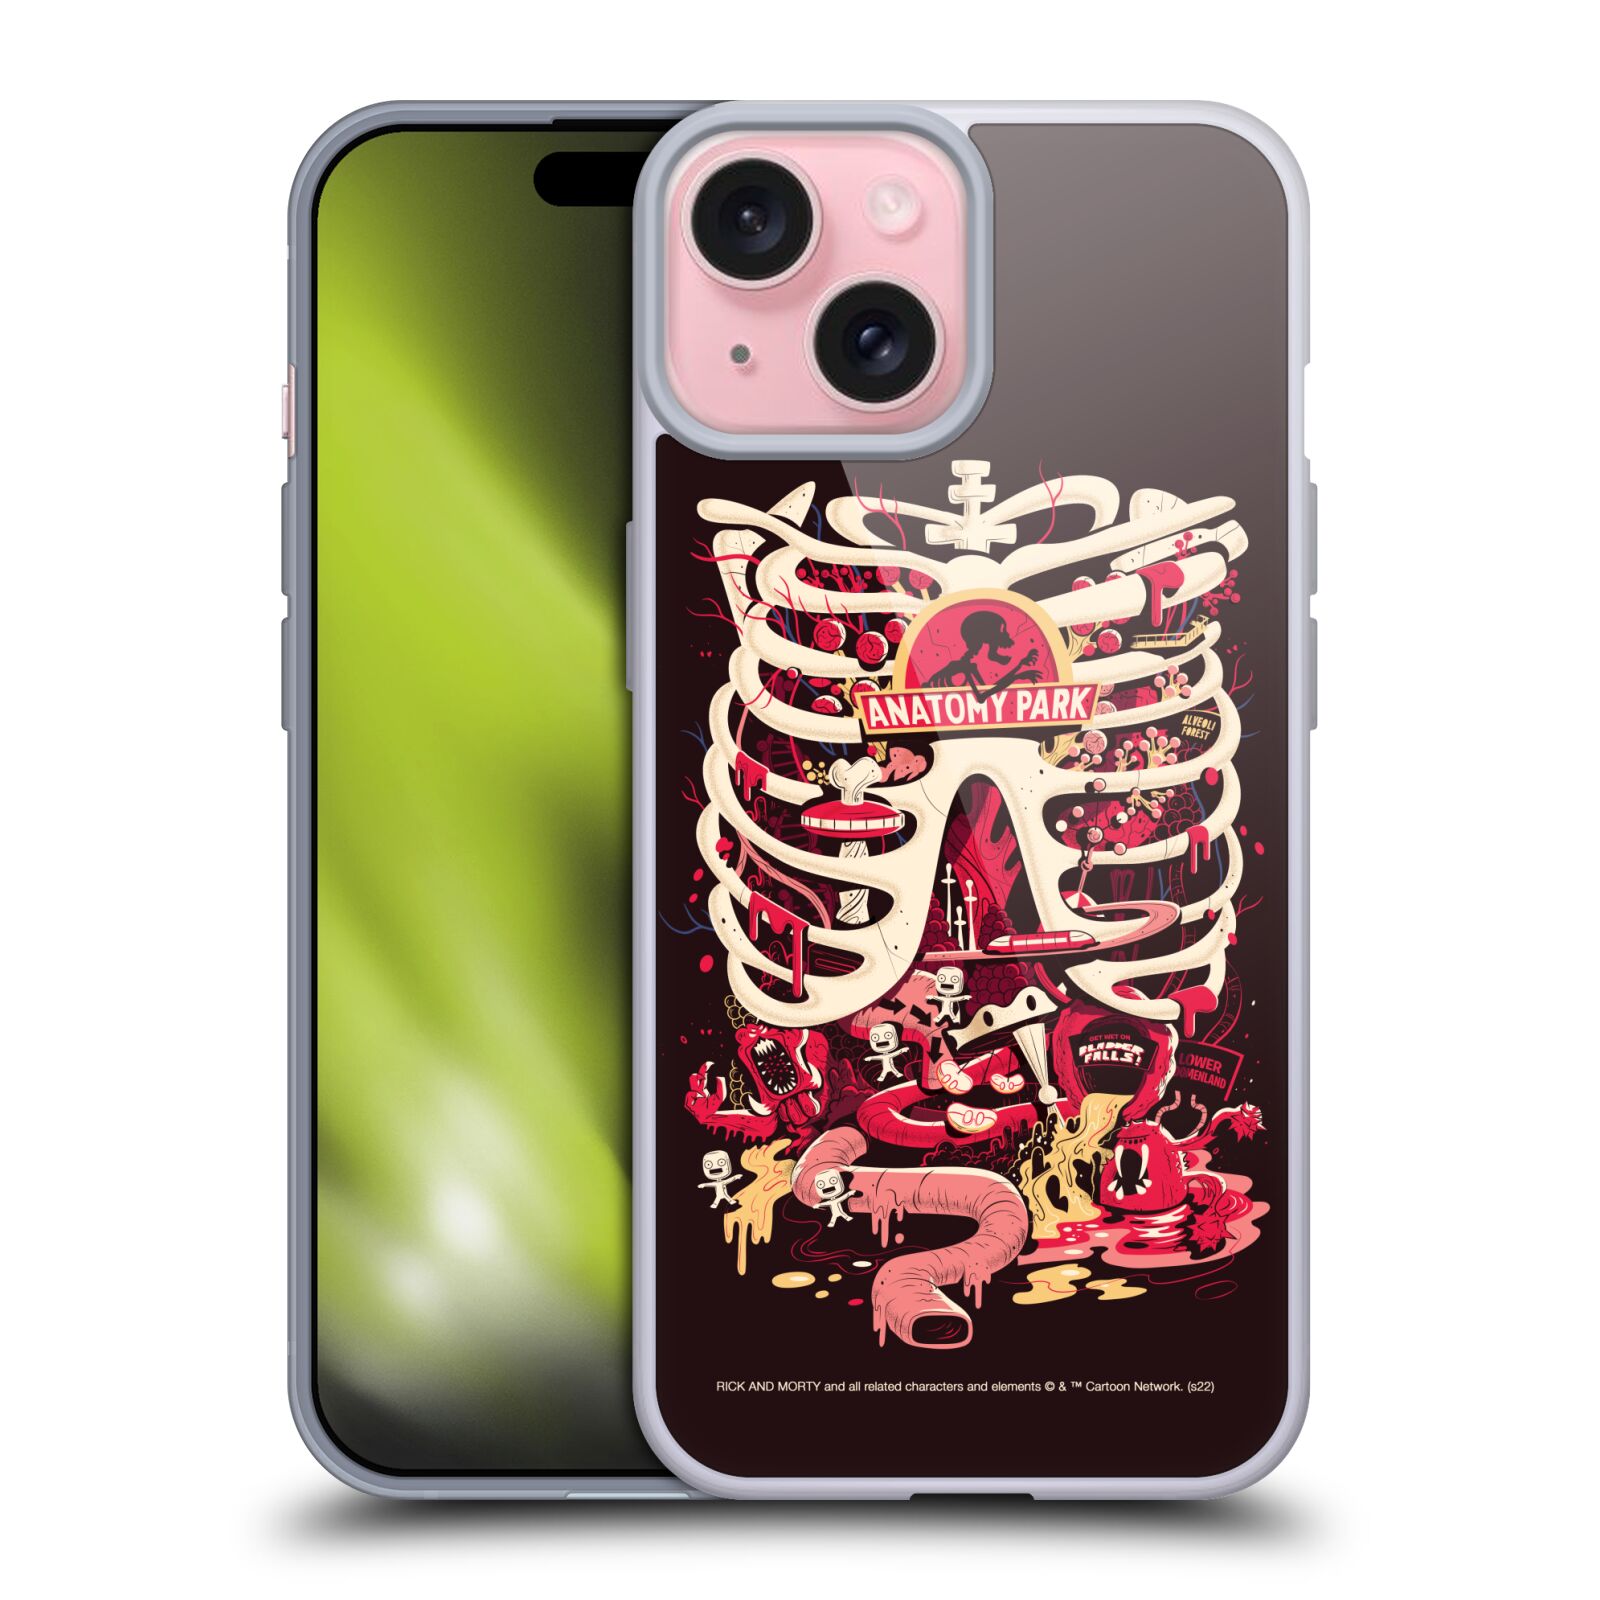 Silikonové lesklé pouzdro na mobil Apple iPhone 15 - Rick And Morty - Anatomy Park (Silikonový lesklý kryt, obal, pouzdro na mobilní telefon Apple iPhone 15 s licencovaným motivem Rick And Morty - Anatomy Park)